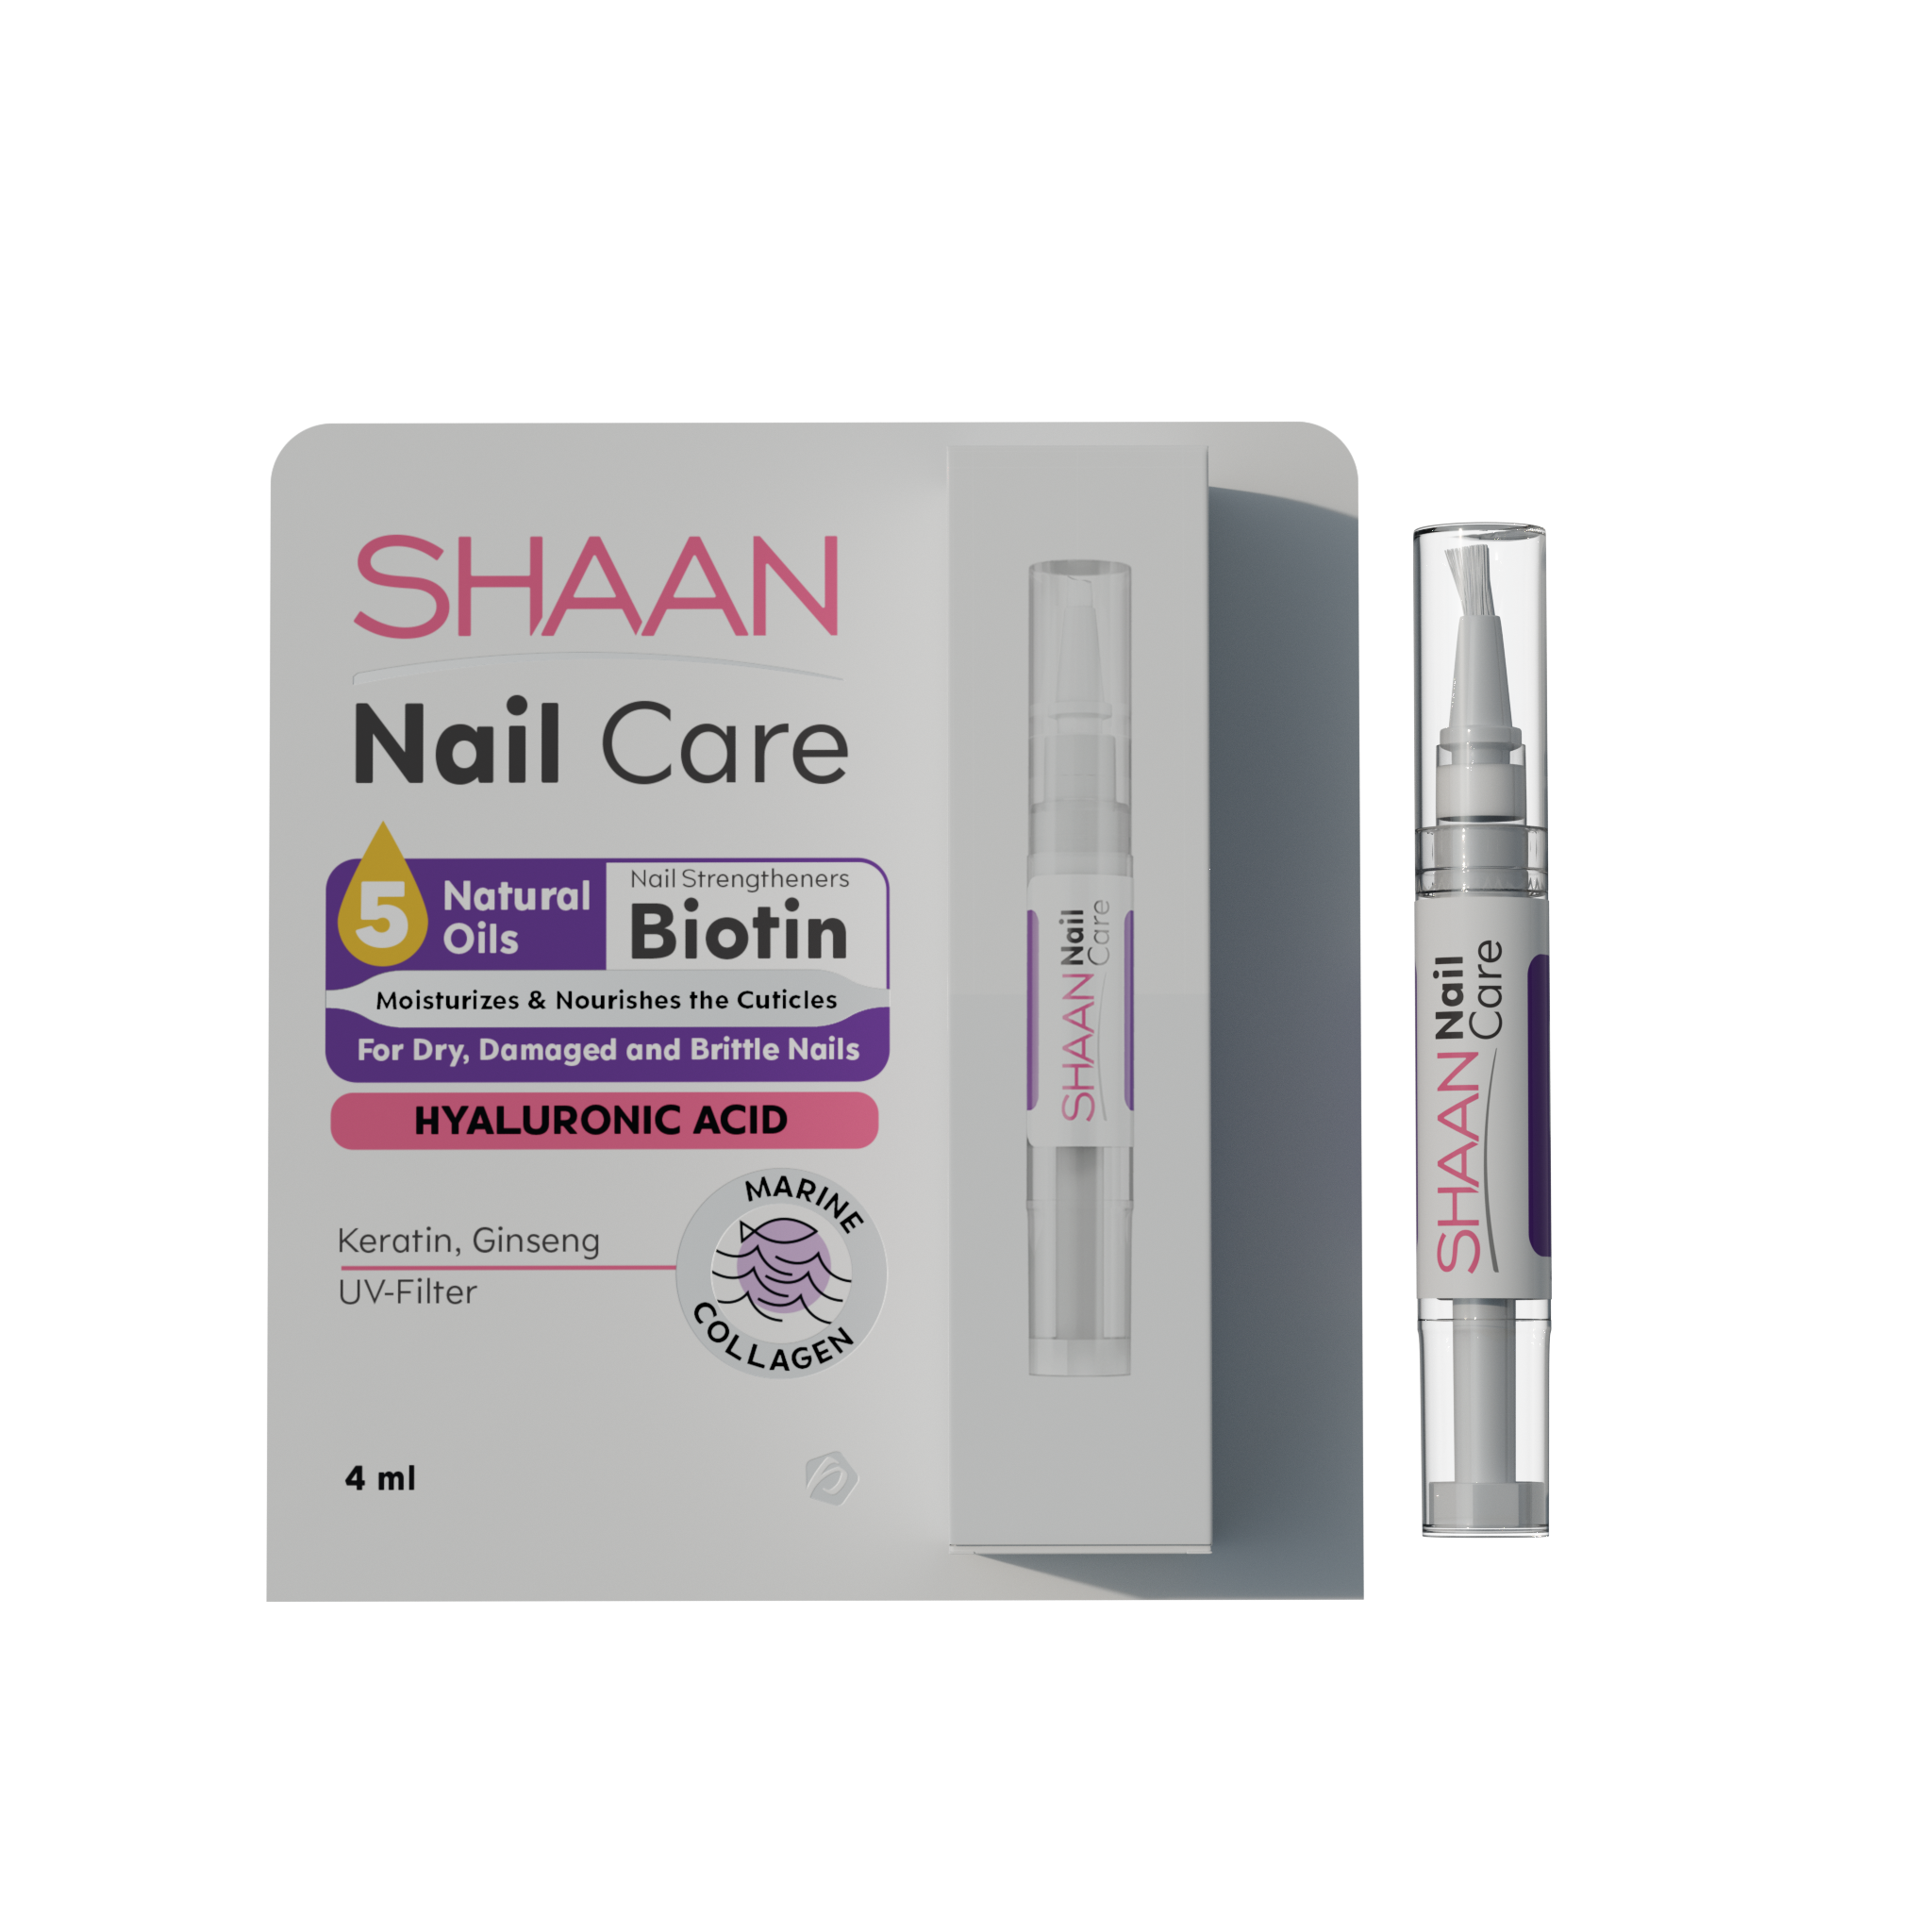 Shaan Nail Care 4 ml